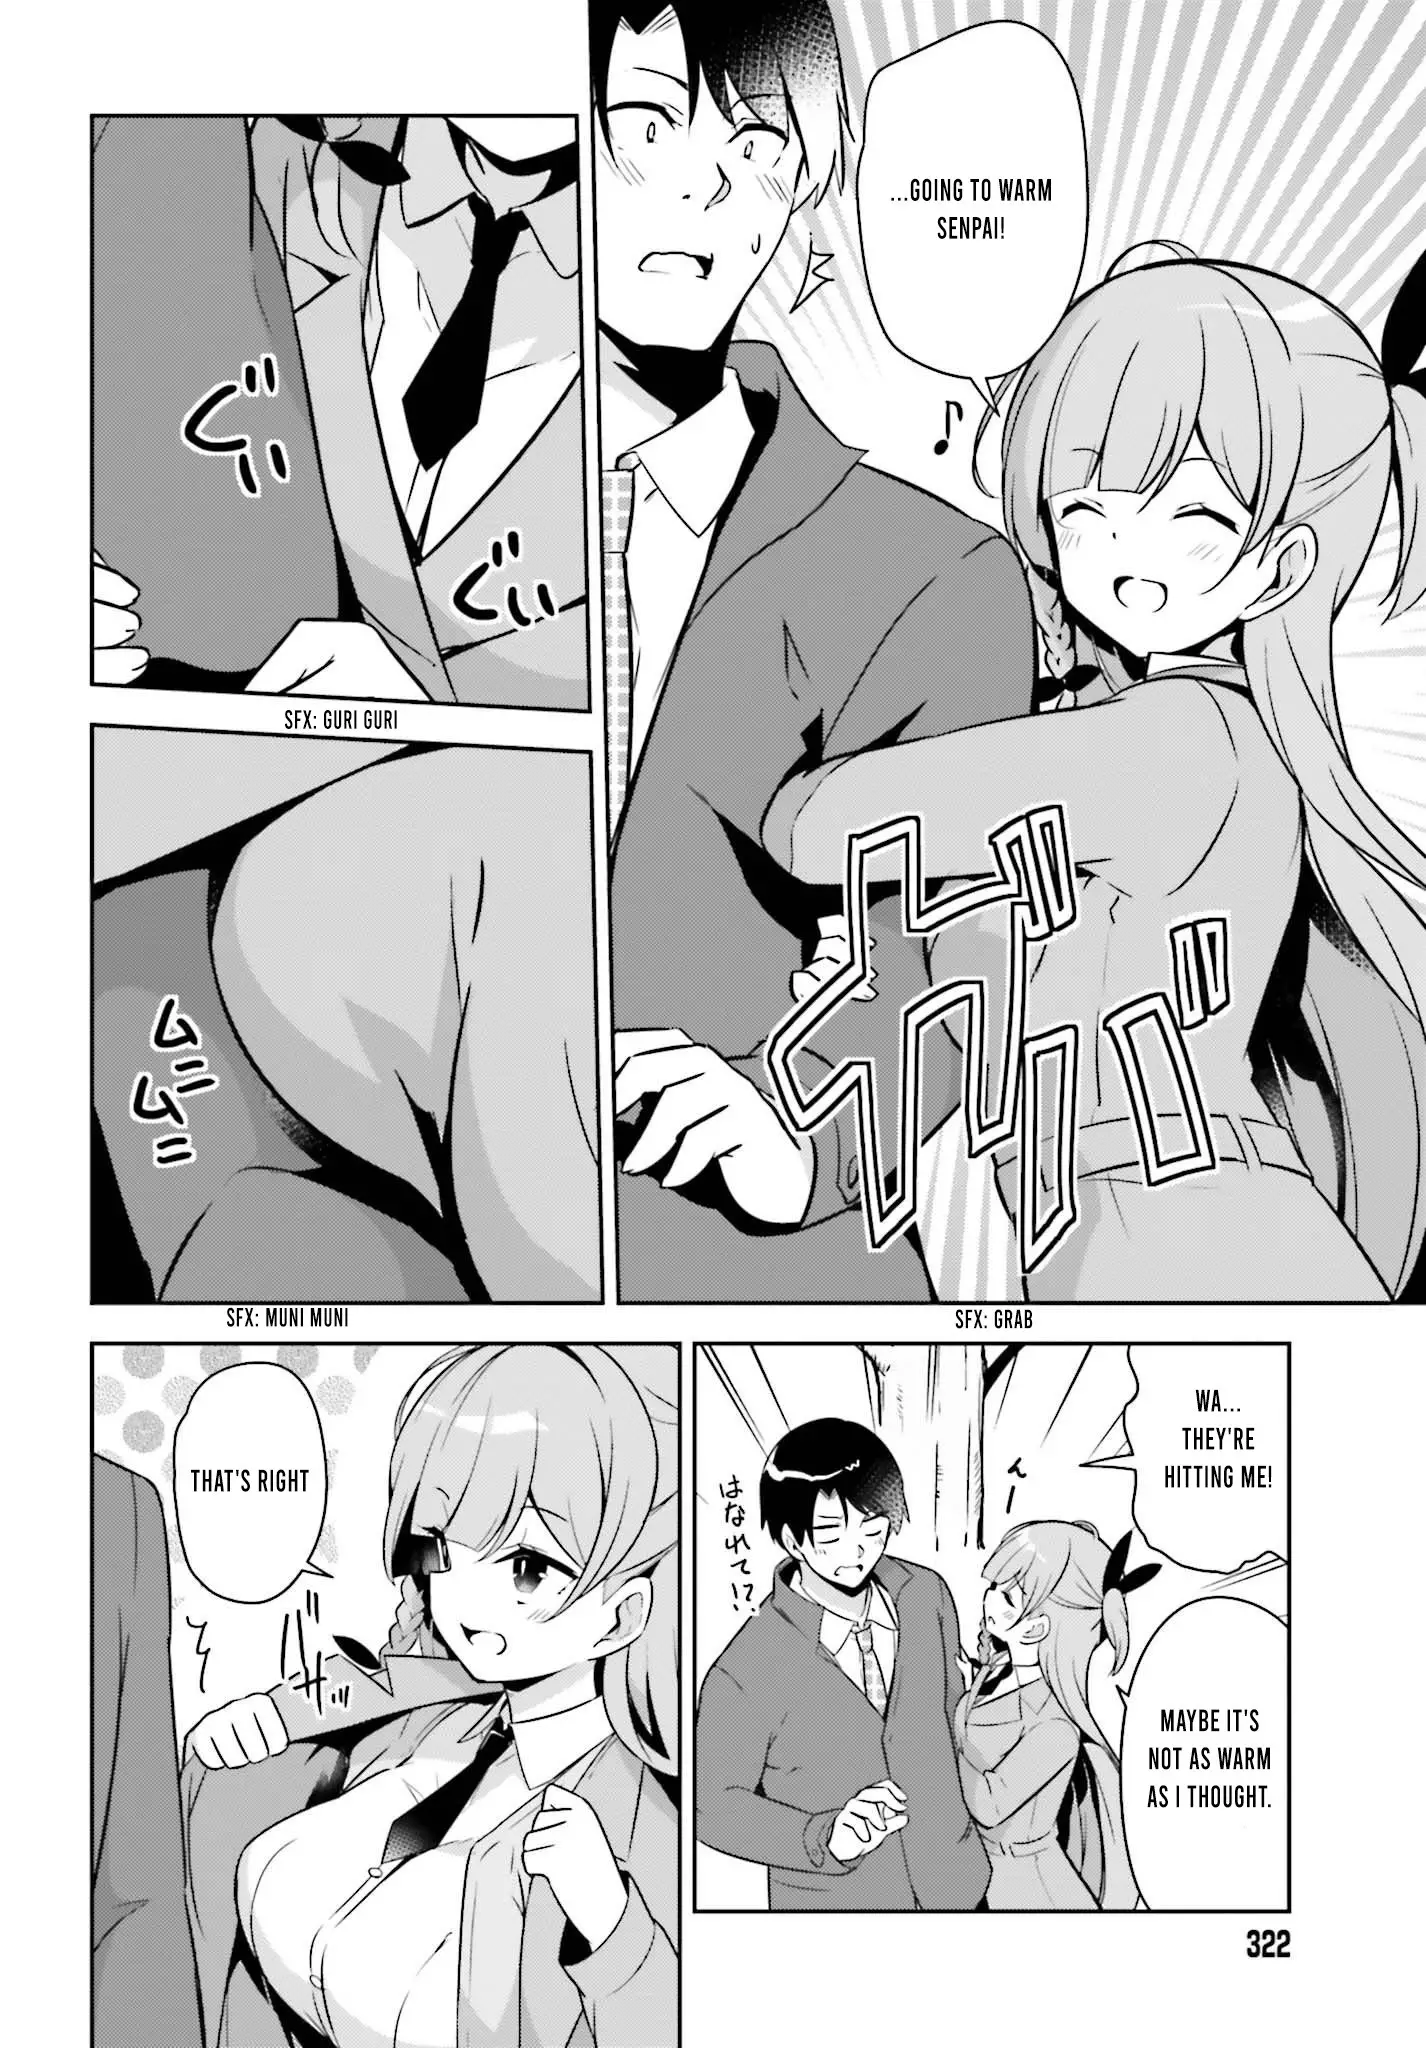 Senpai! Let's Have An Office Romance ♪ - 1 page 7